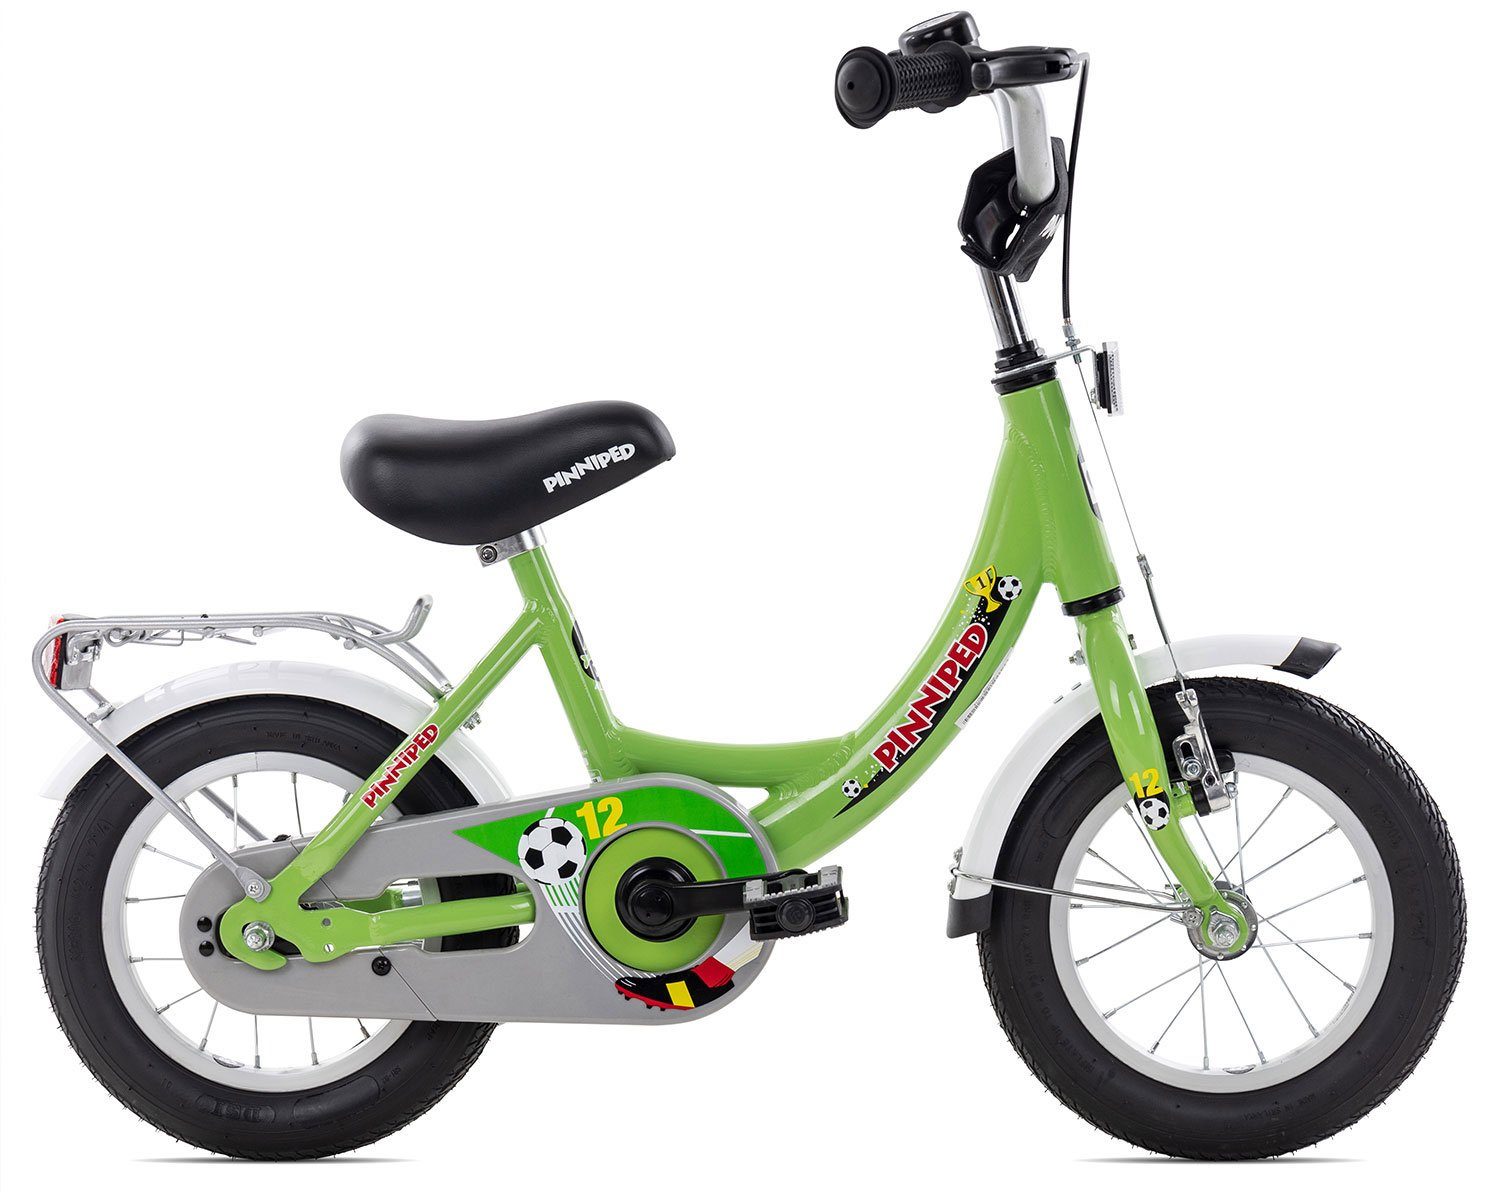 Pinniped Kinderfahrrad Kid 12, 1 Gang Bremsnabe Schaltwerk, Kinderrad 12 bis 18 Zoll Junge Mädchen grün green